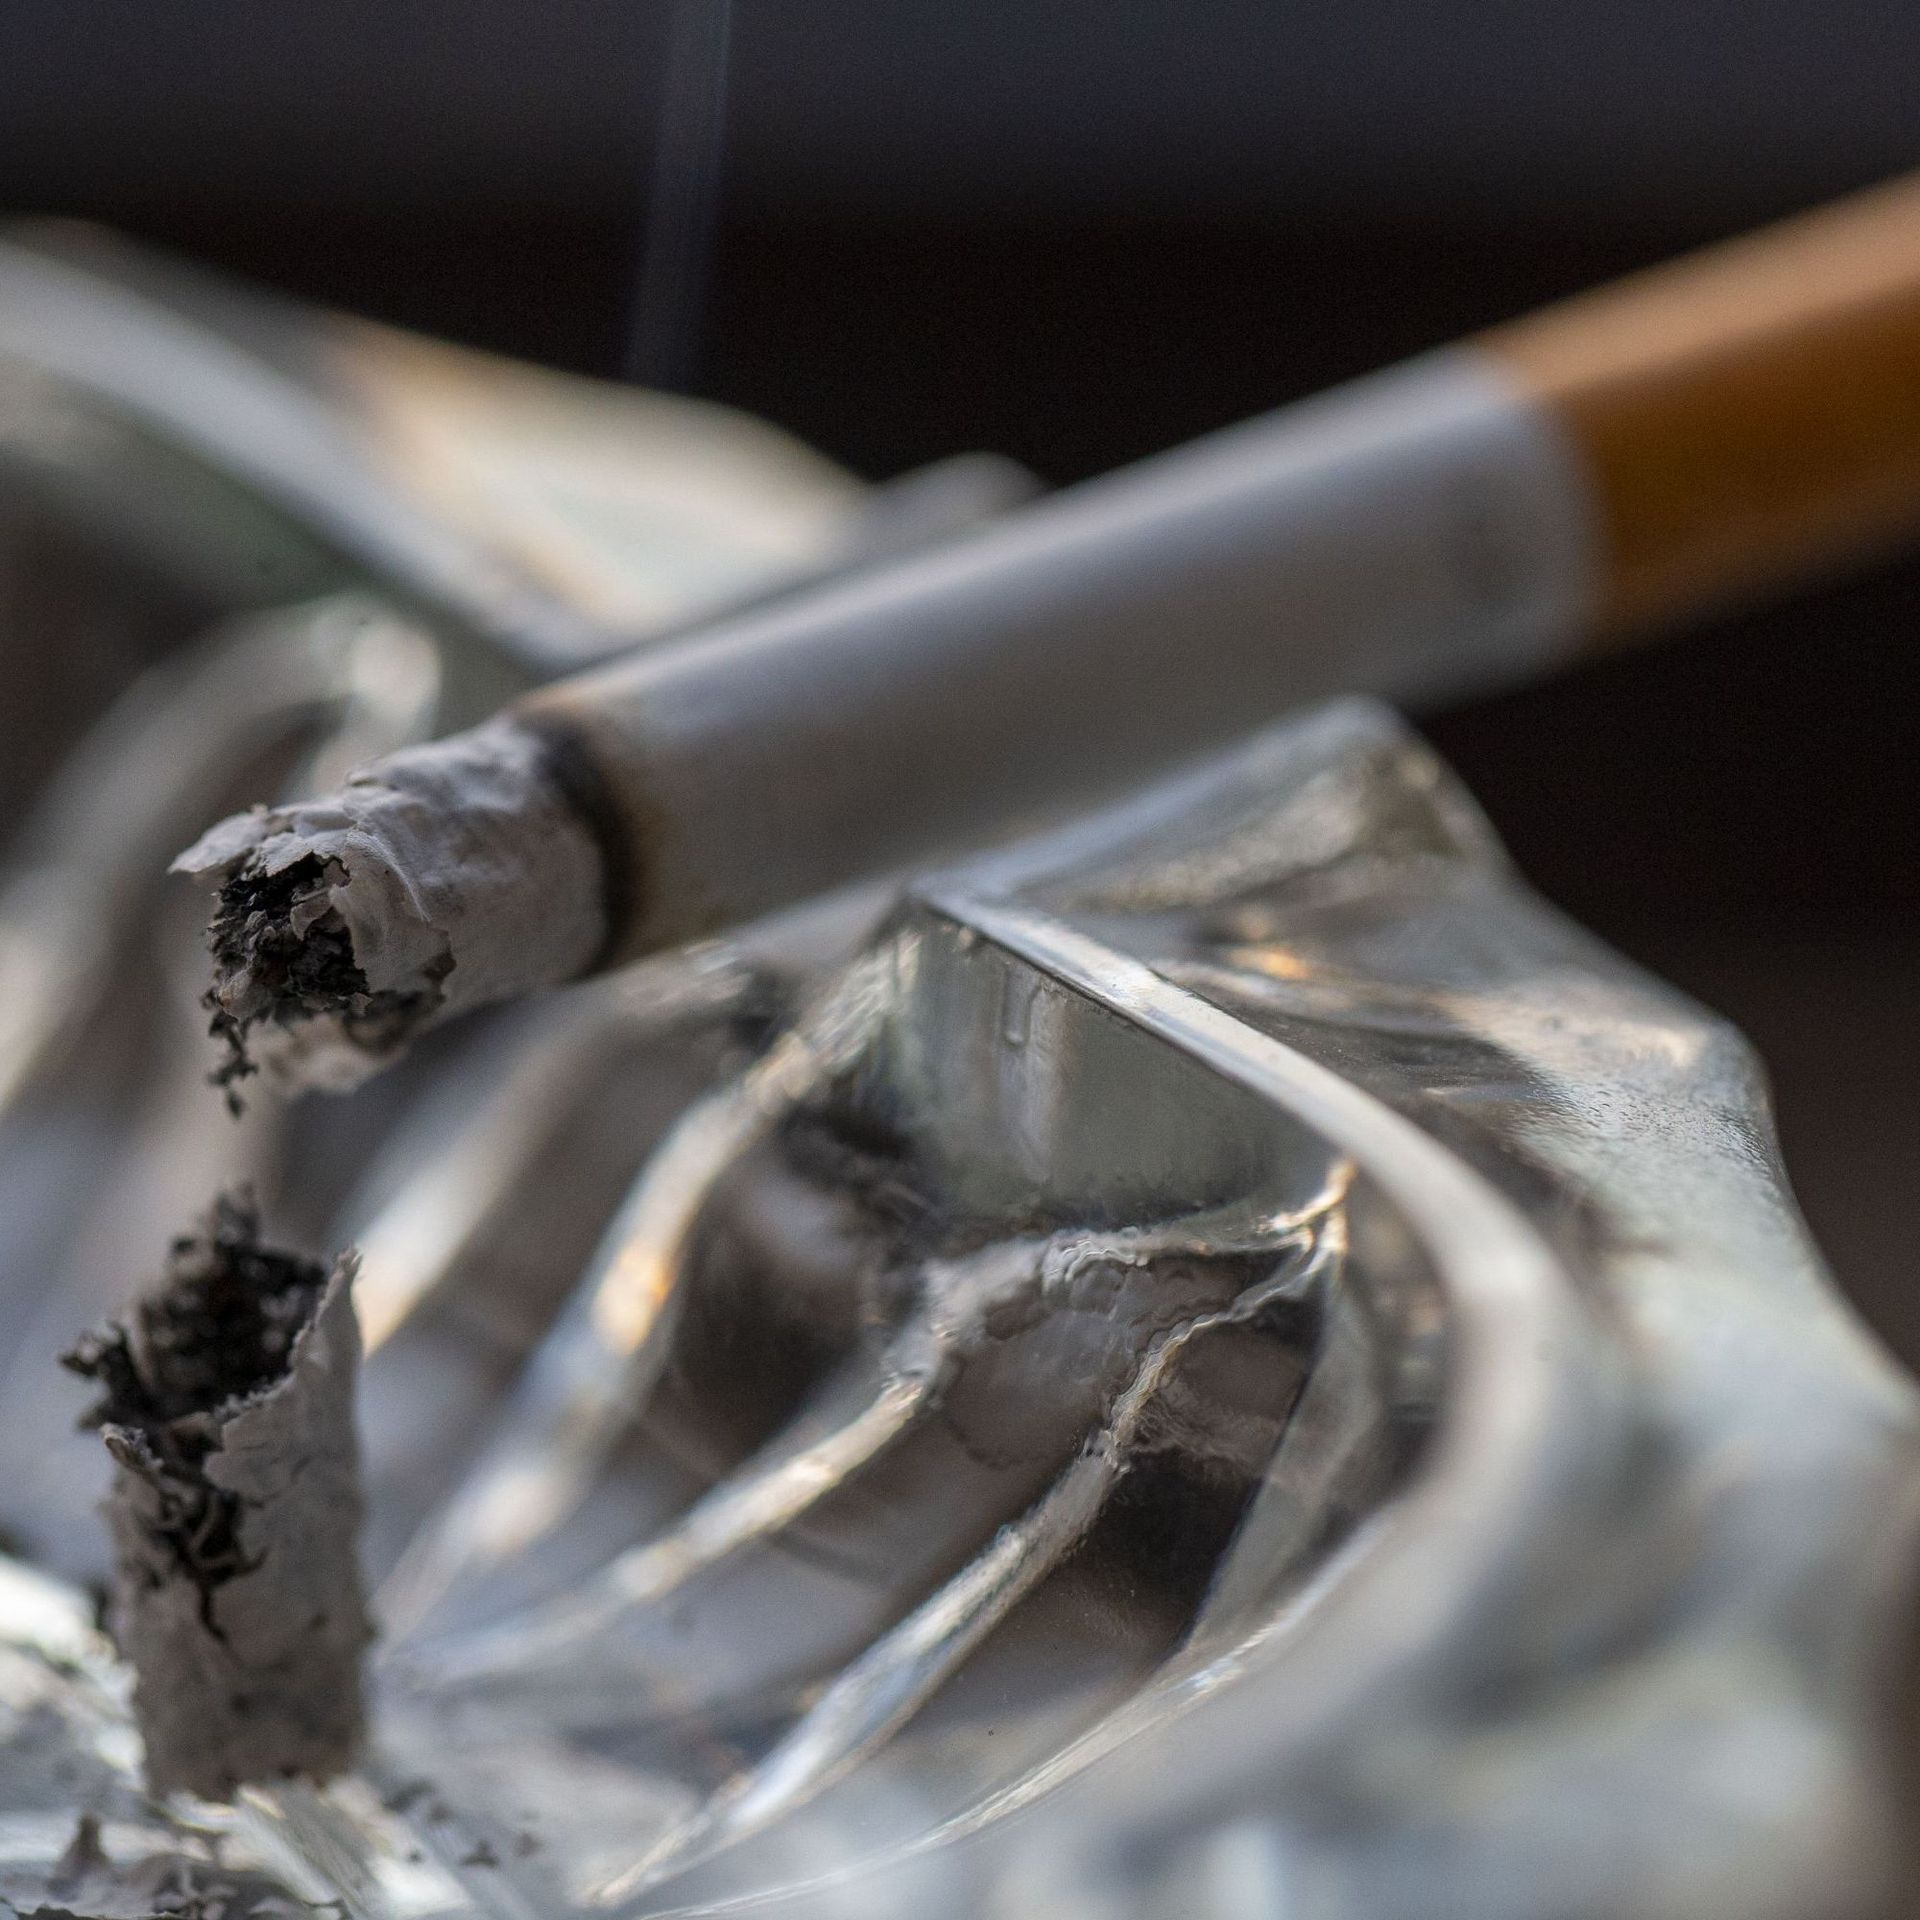 La Belgique lance un plan anti-tabac ambitieux: la France doit-elle faire  pareil ?